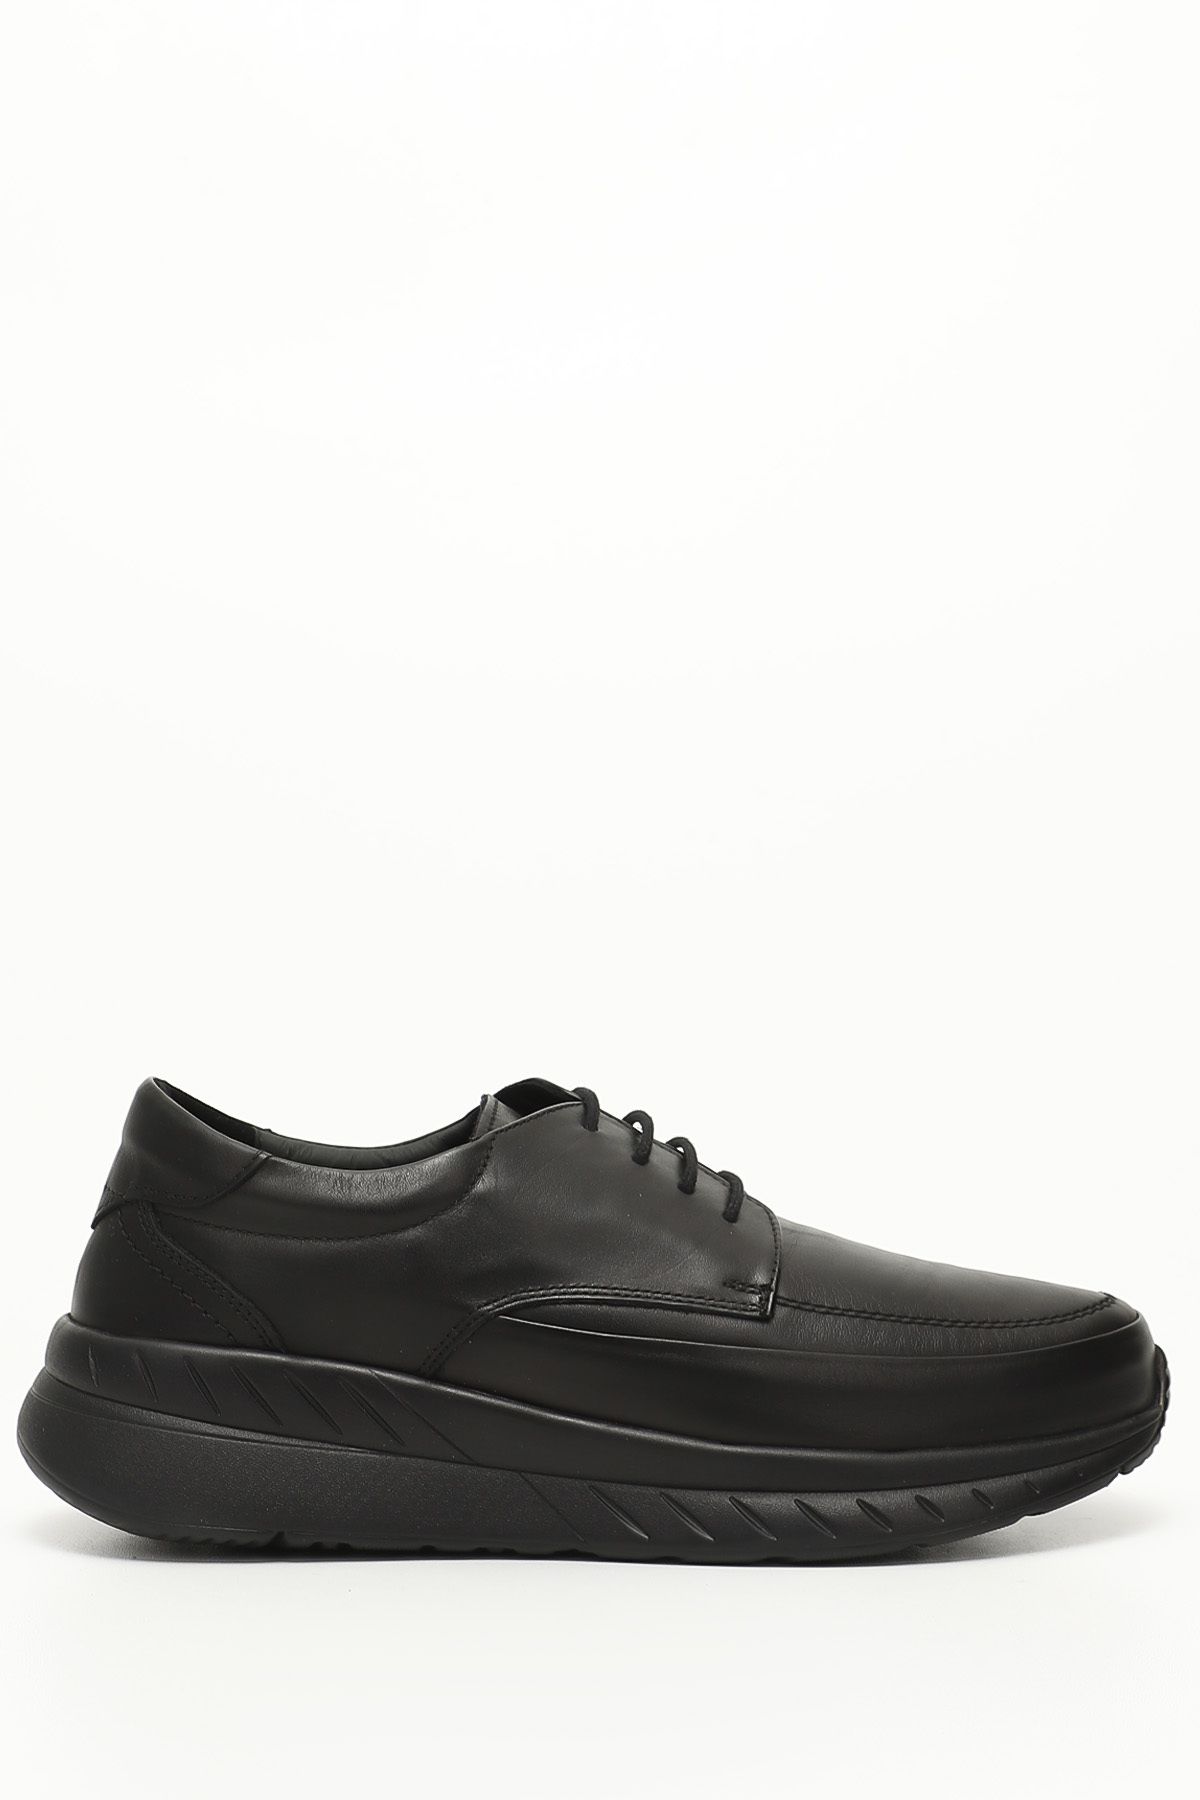 GÖNDERİ(R) Siyah Gön Platinum Hakiki Deri Yuvarlak Burun Bağcıklı Günlük Erkek Ayakkabı 42511